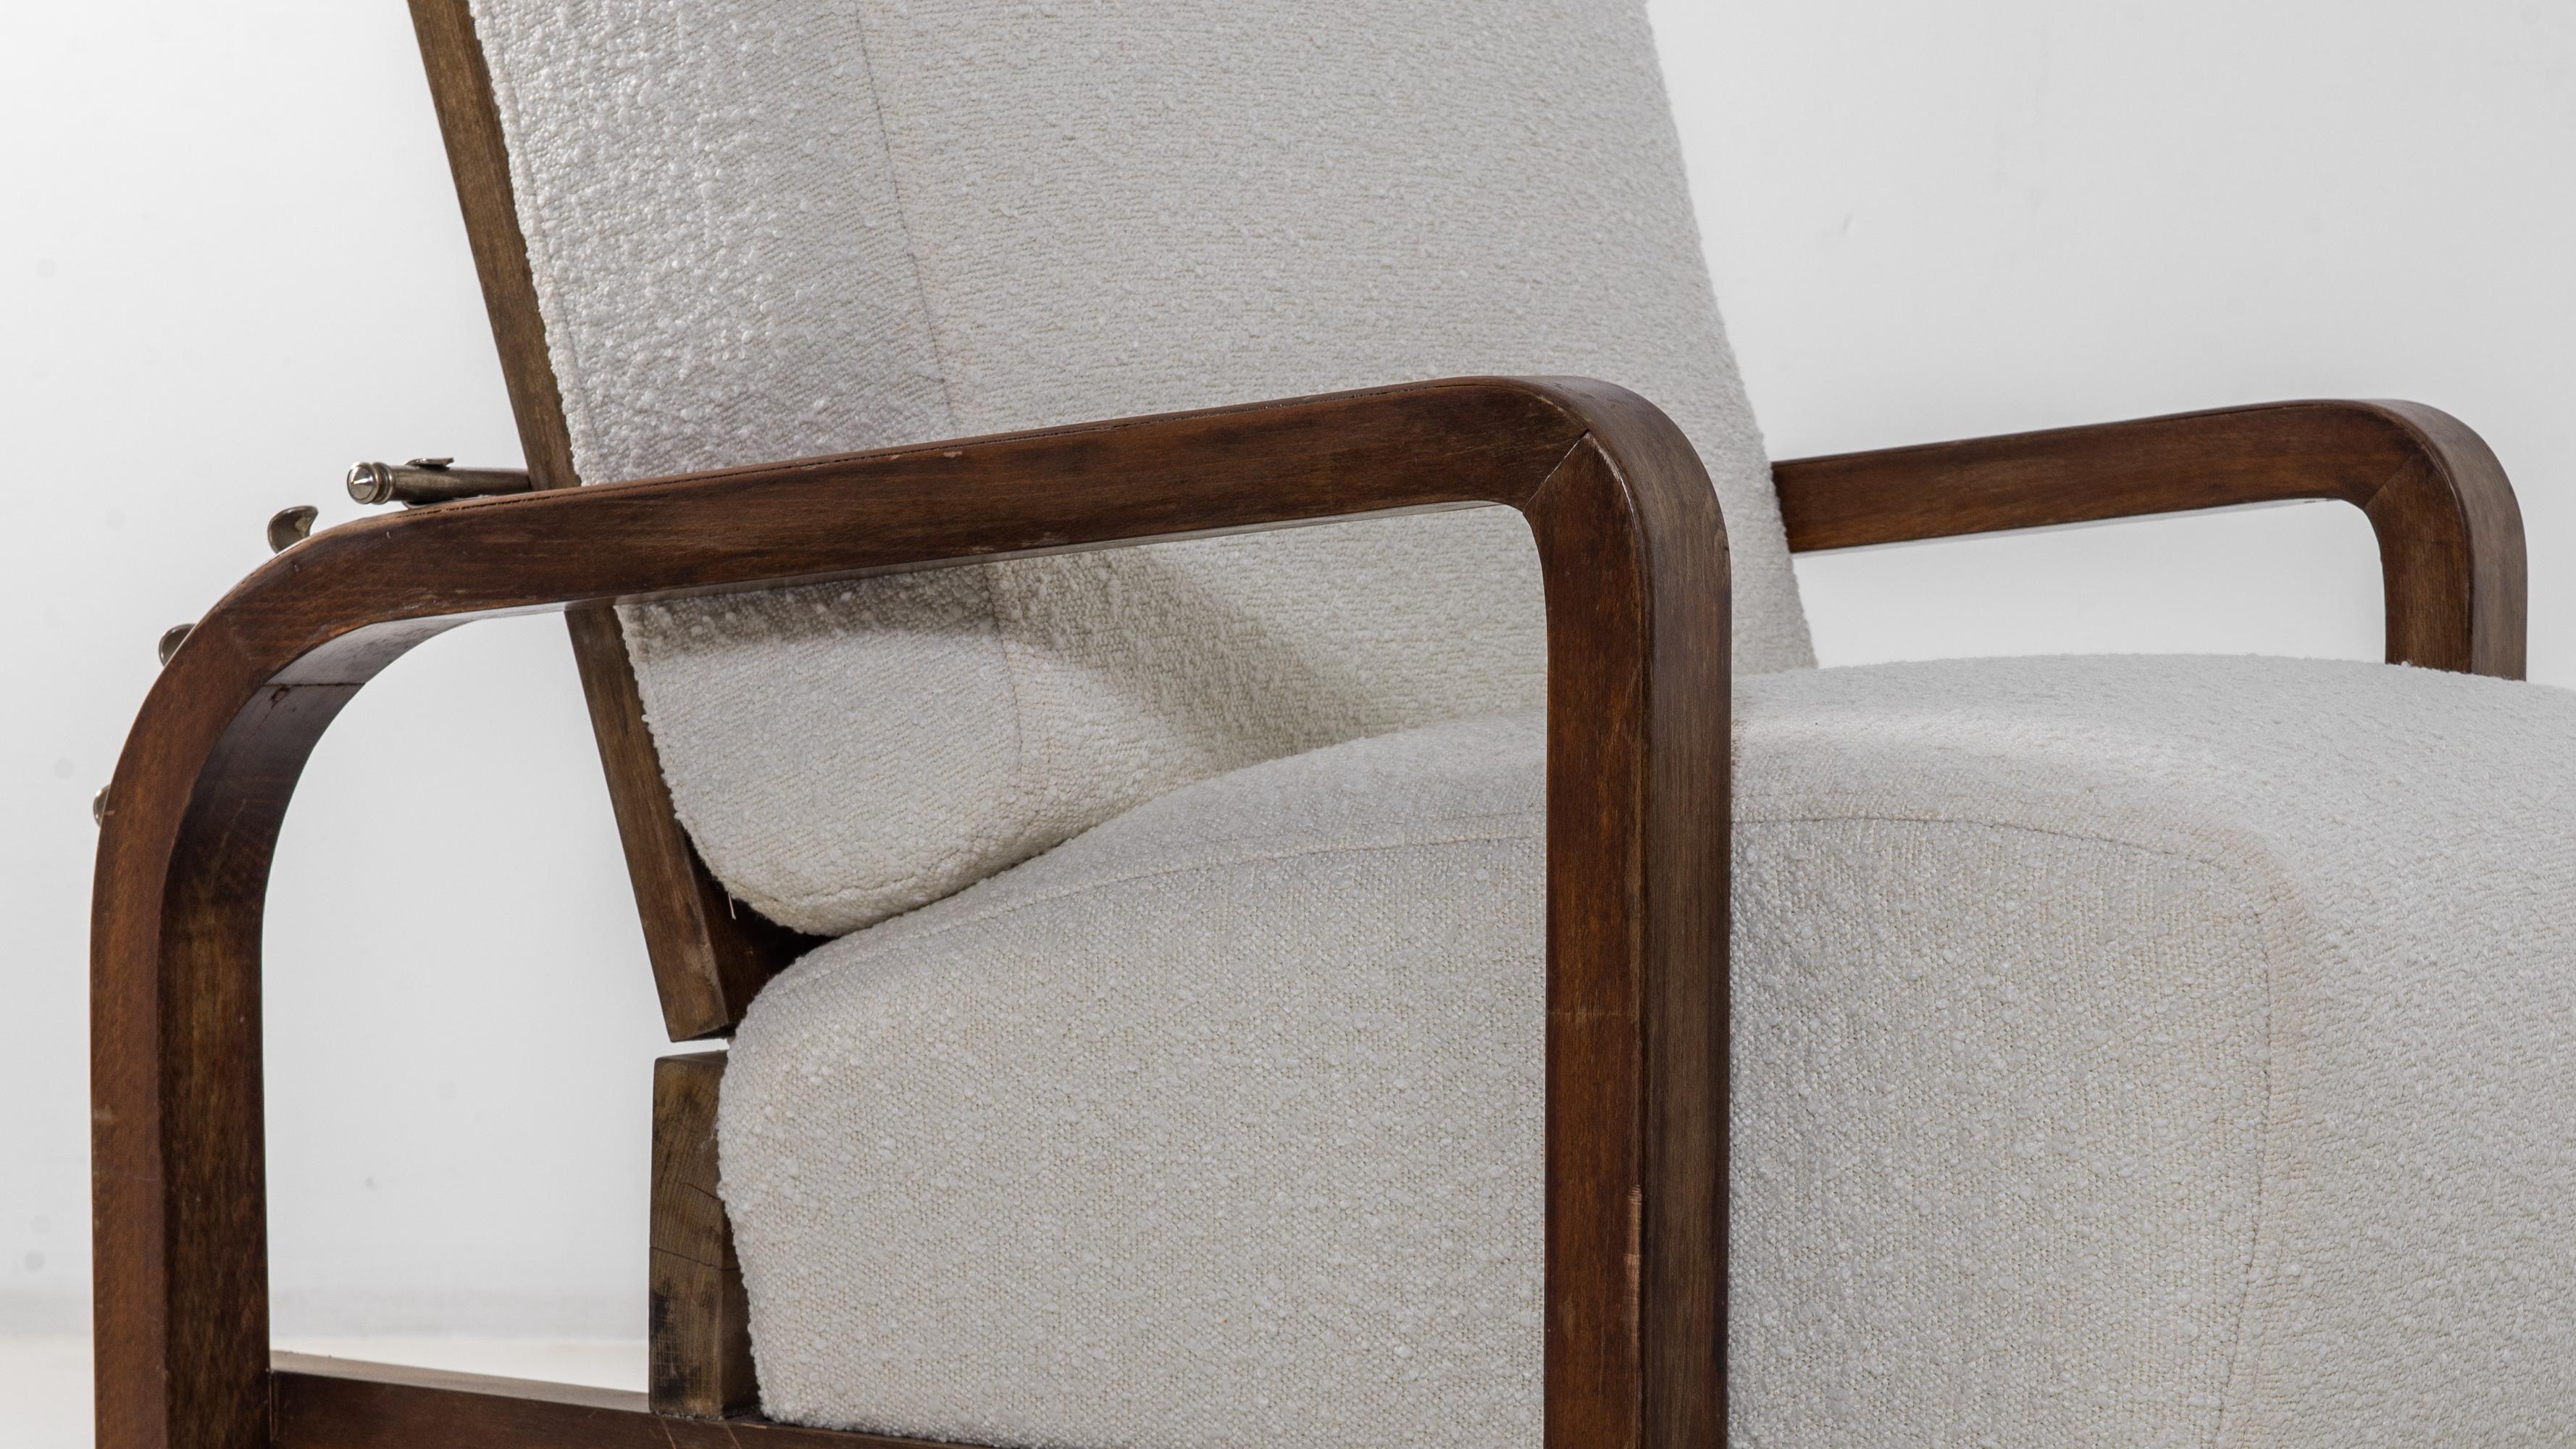 Das einzigartige Design dieses Sessels verleiht ihm eine faszinierende und reizvolle Persönlichkeit. Der in den 1930er Jahren in Mitteleuropa gefertigte, niedrige Sitz schwebt nur wenige Zentimeter über dem Boden, die Größe der Kissen ist für die